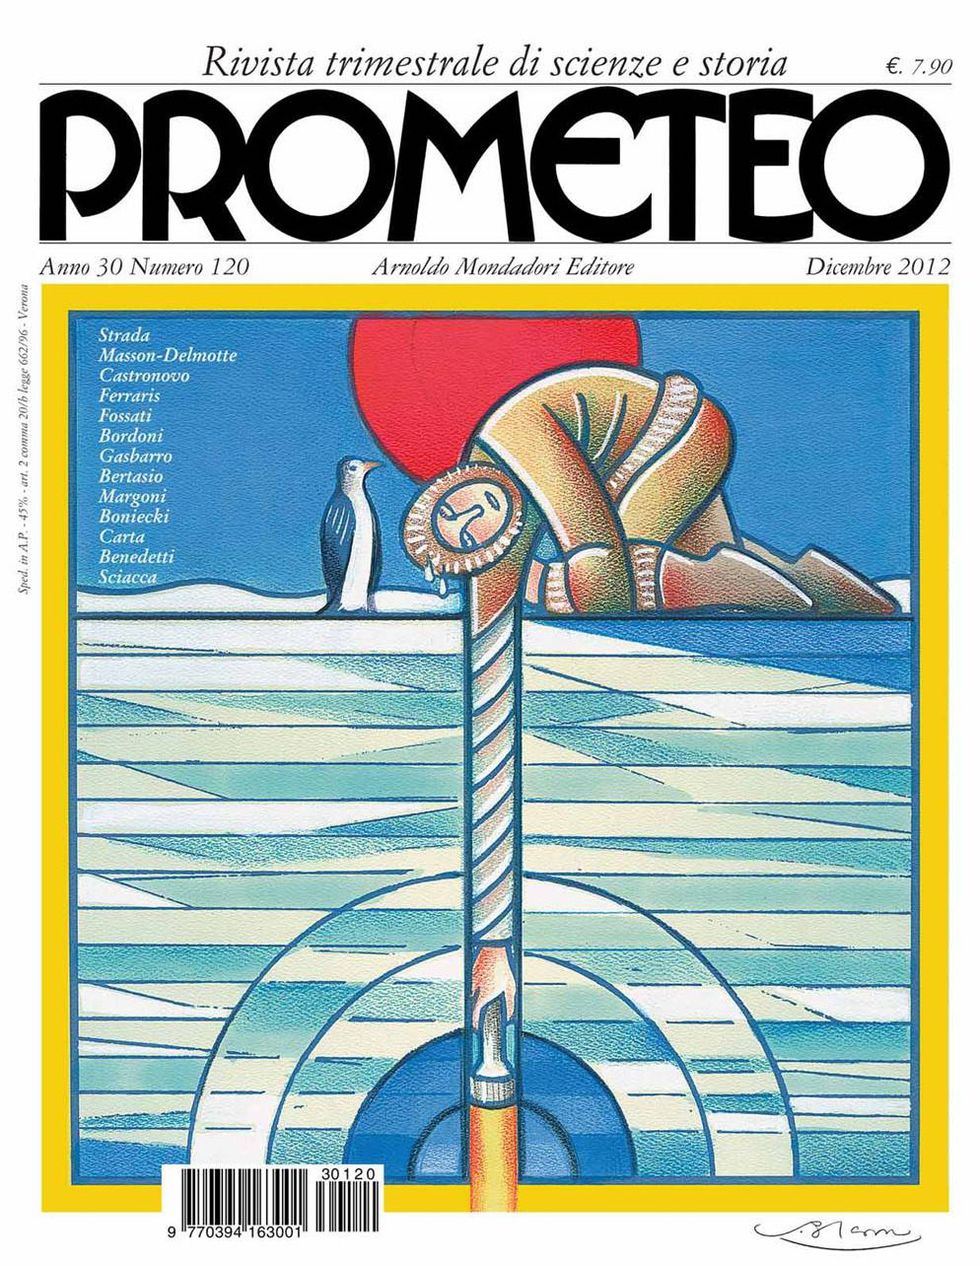 Prometeo, è in edicola il numero di dicembre 2012